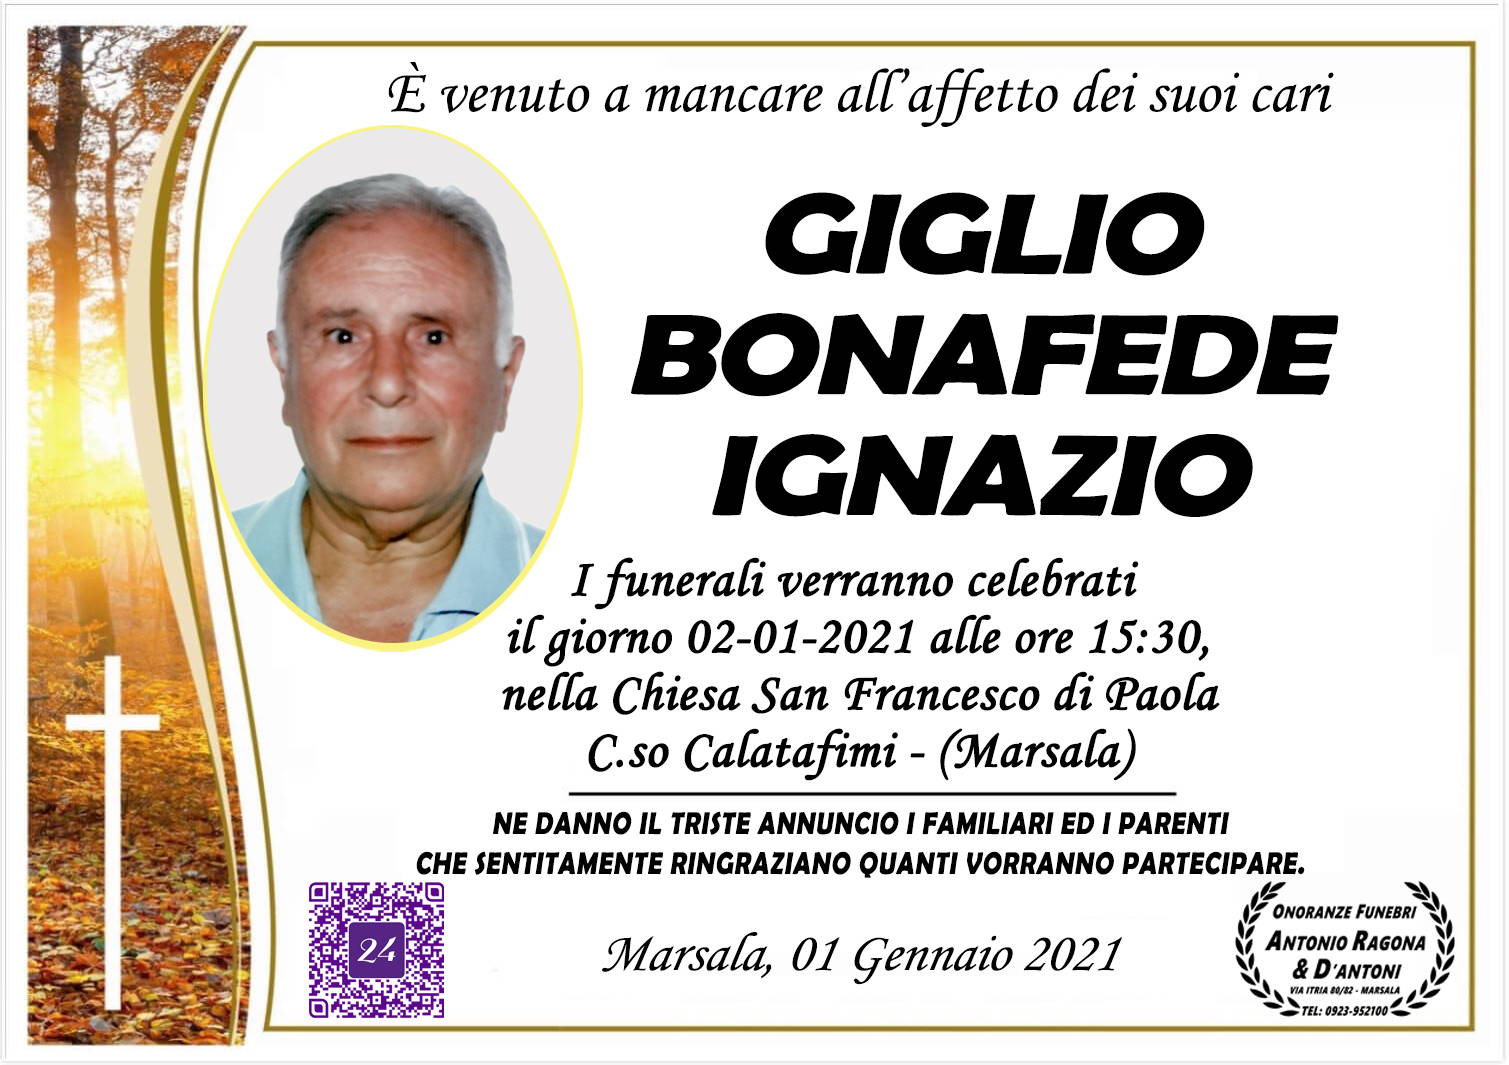 Ignazio Giglio Bonafede